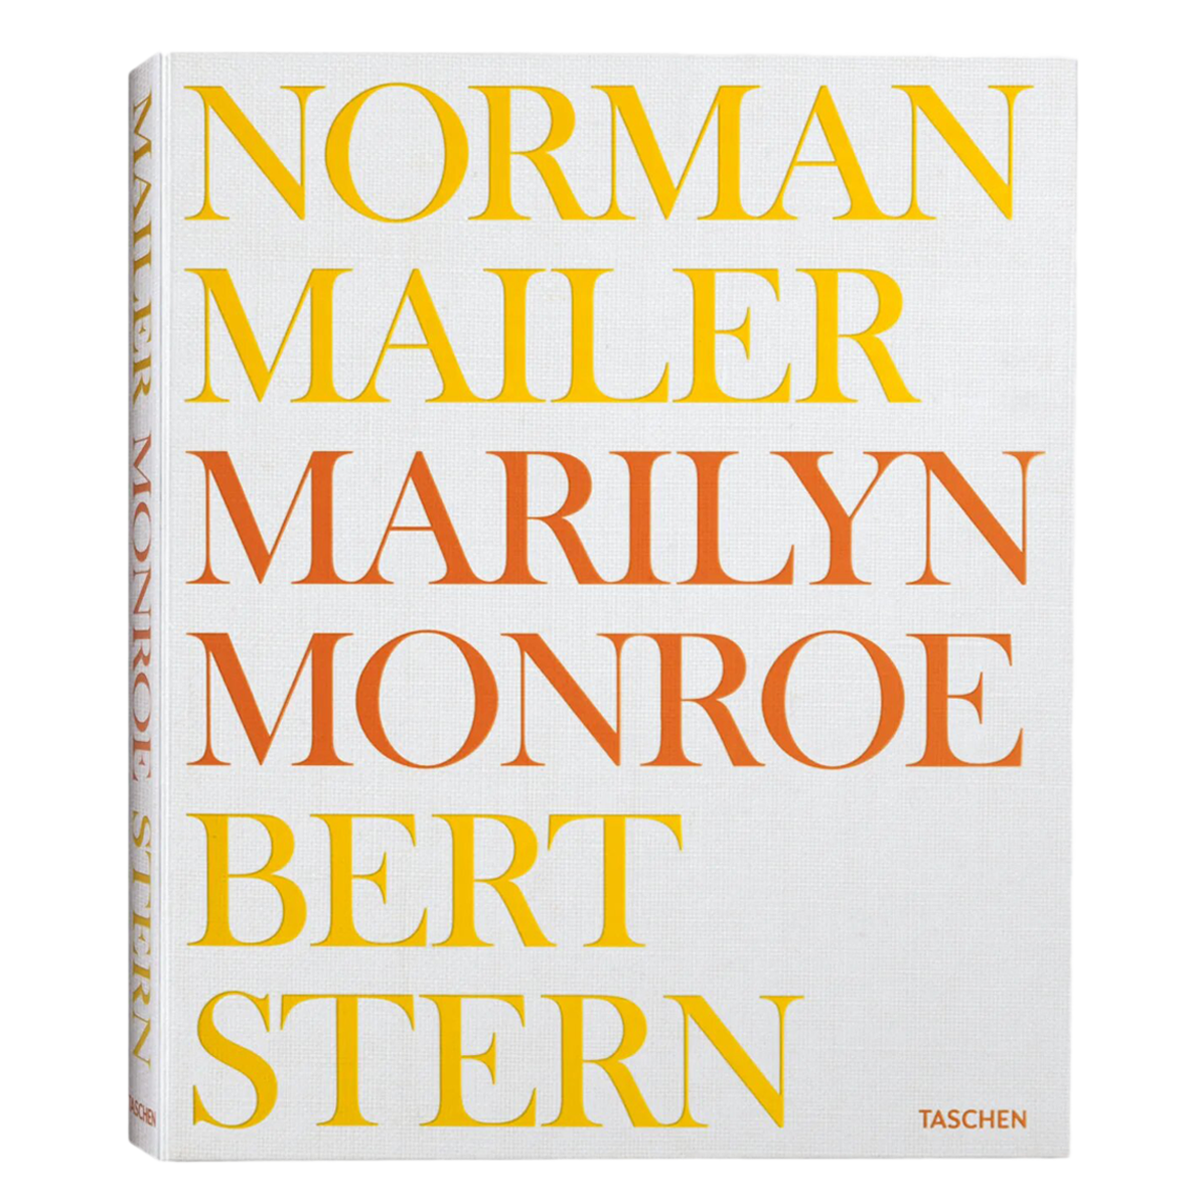 Norman Mailer. Bert Stern. M. Monroe ING